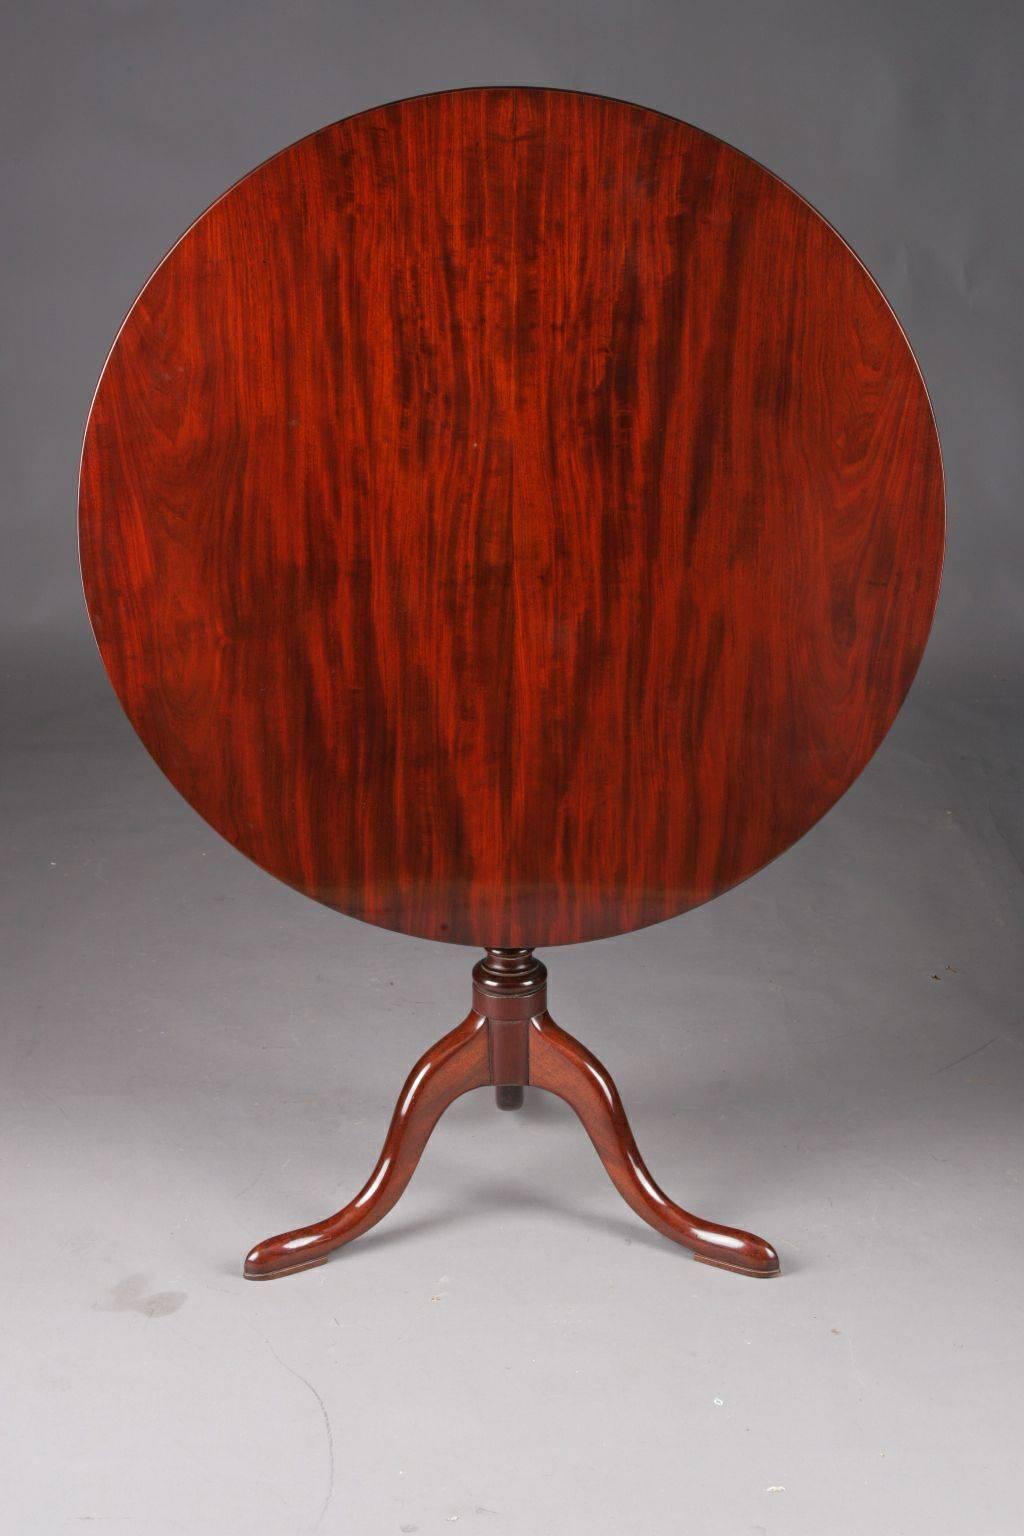 Seltener originaler englischer Regency-Klapptisch oder Dreibein-Tisch aus dem 18. bis 19. Jahrhundert.
Durch und durch massives Mahagoni. Schlanker Ballroom-Schaft, von dem sich drei geschwungene Beine in sogenannten Kissenfüßen erstrecken. Zwei